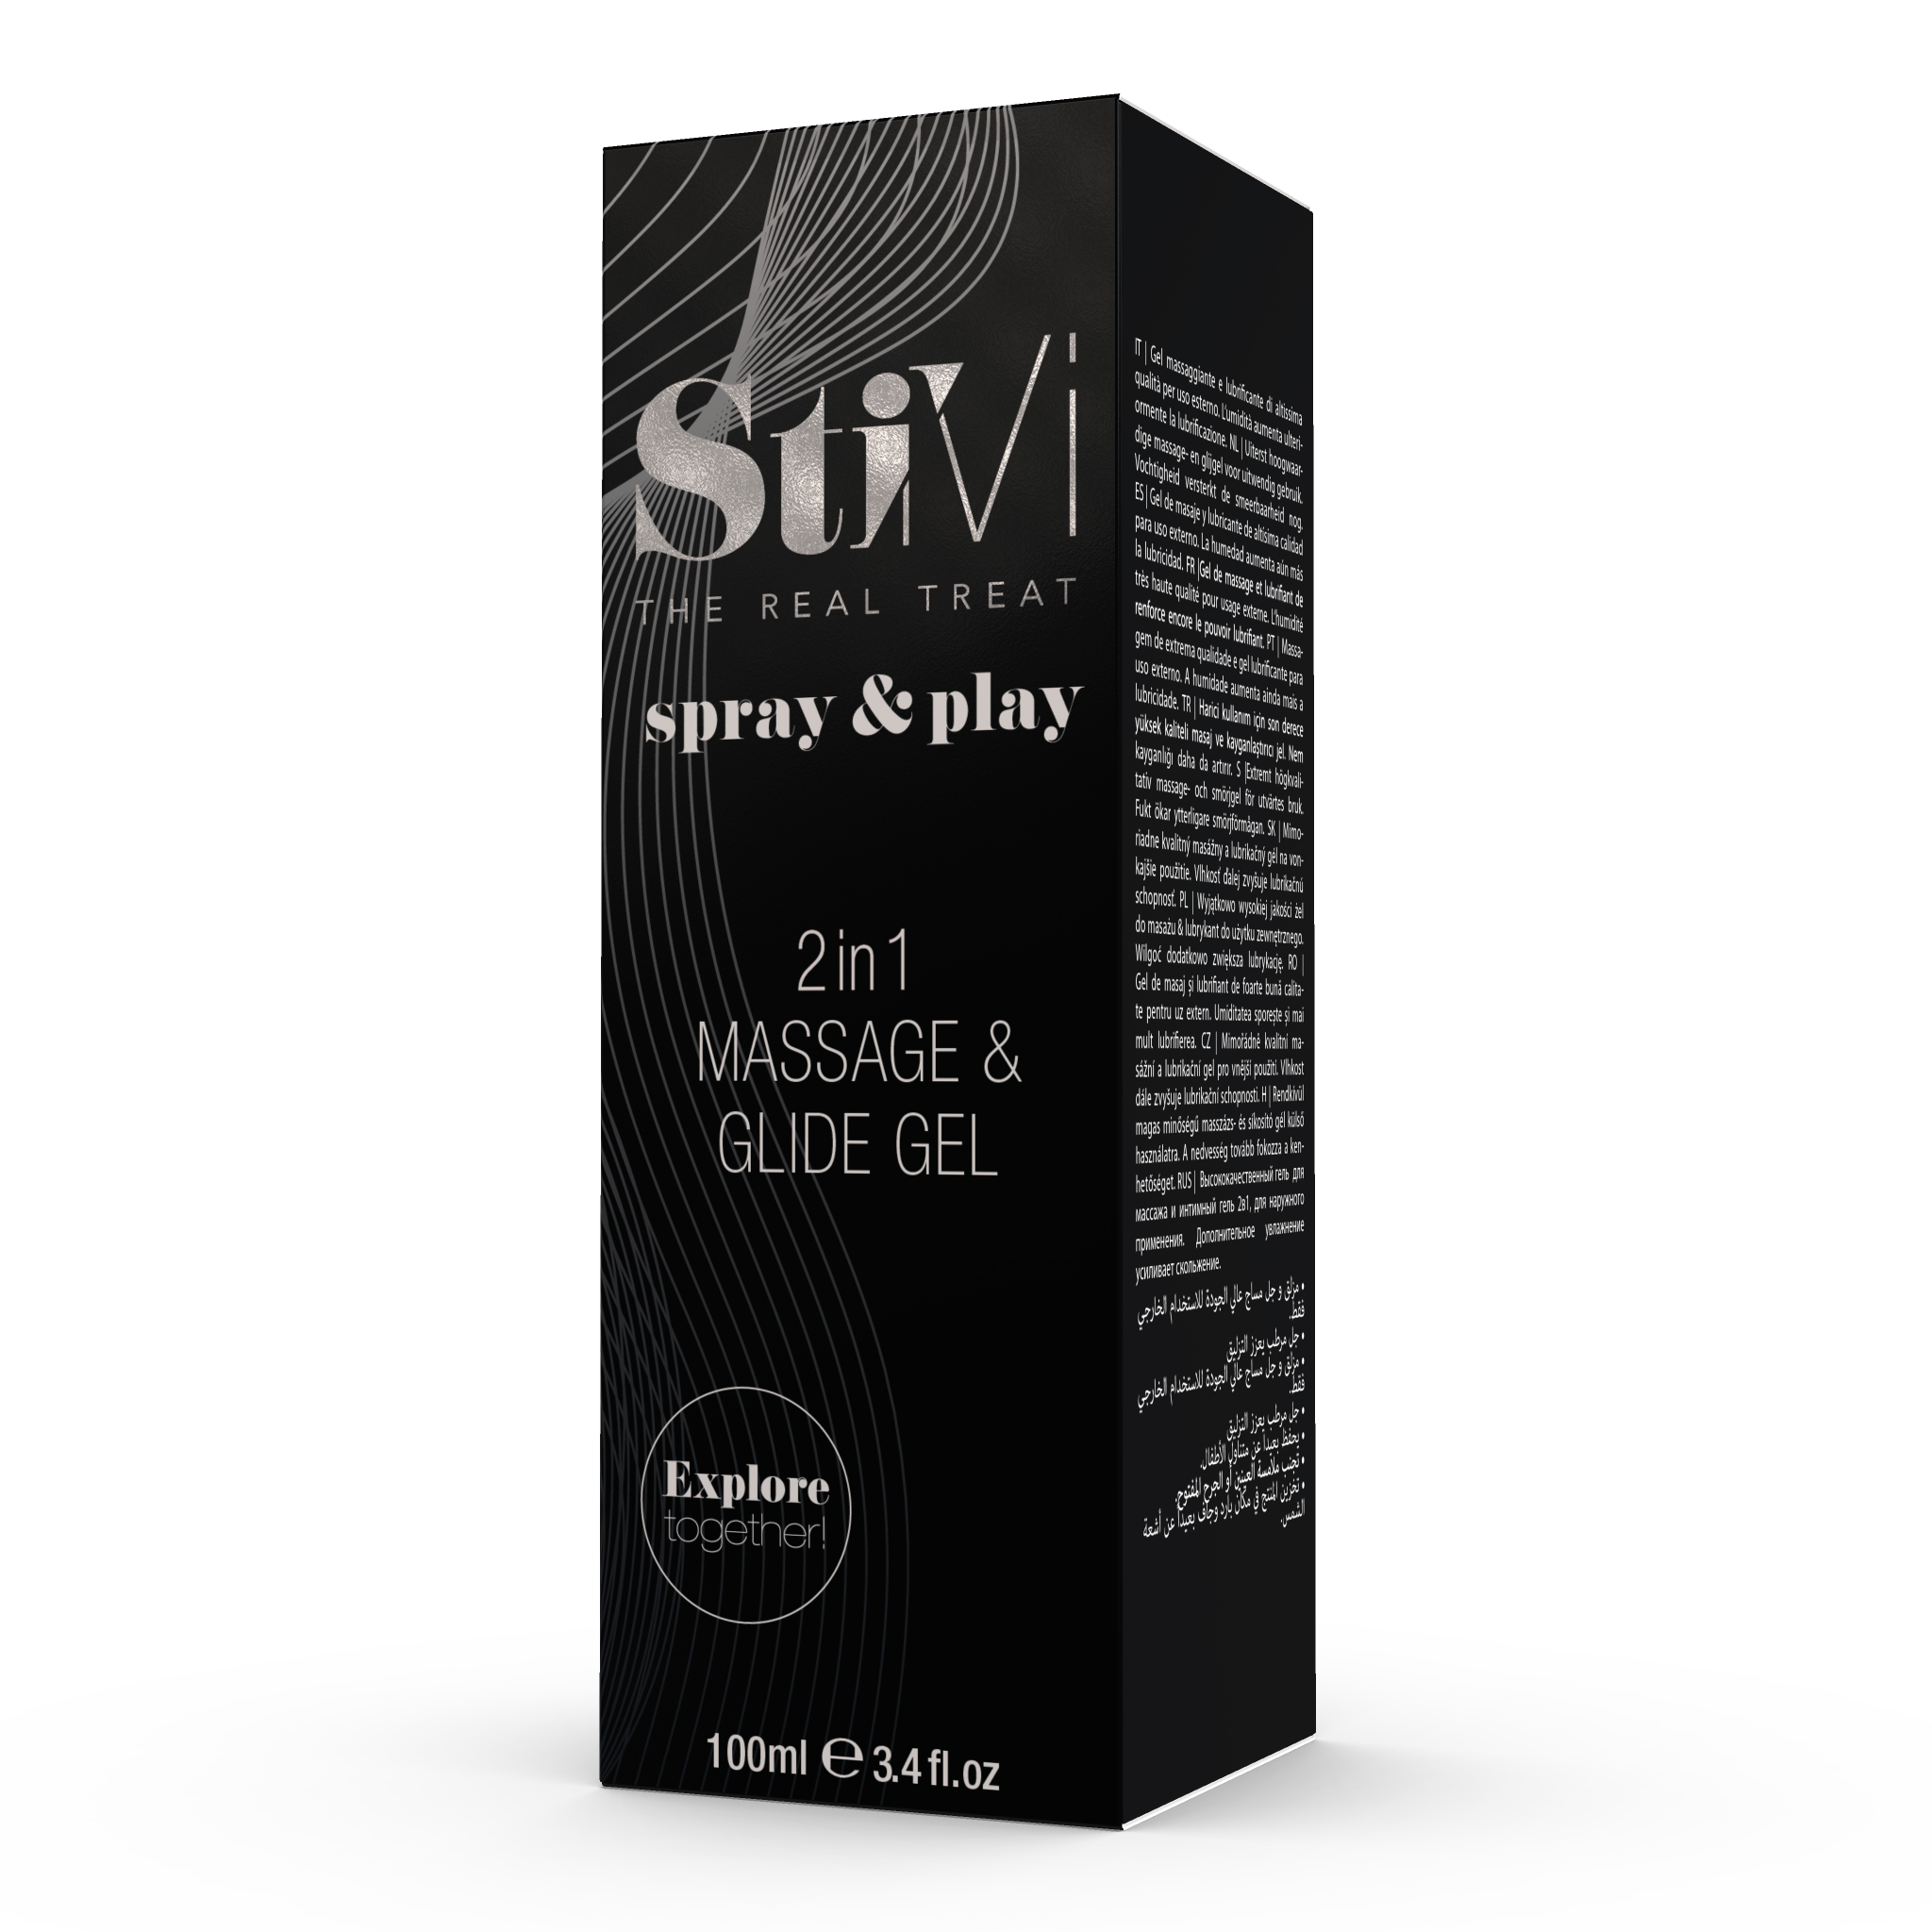 HOT StiVi - spray & play 2in1 Massage & Glide Gel 100ml